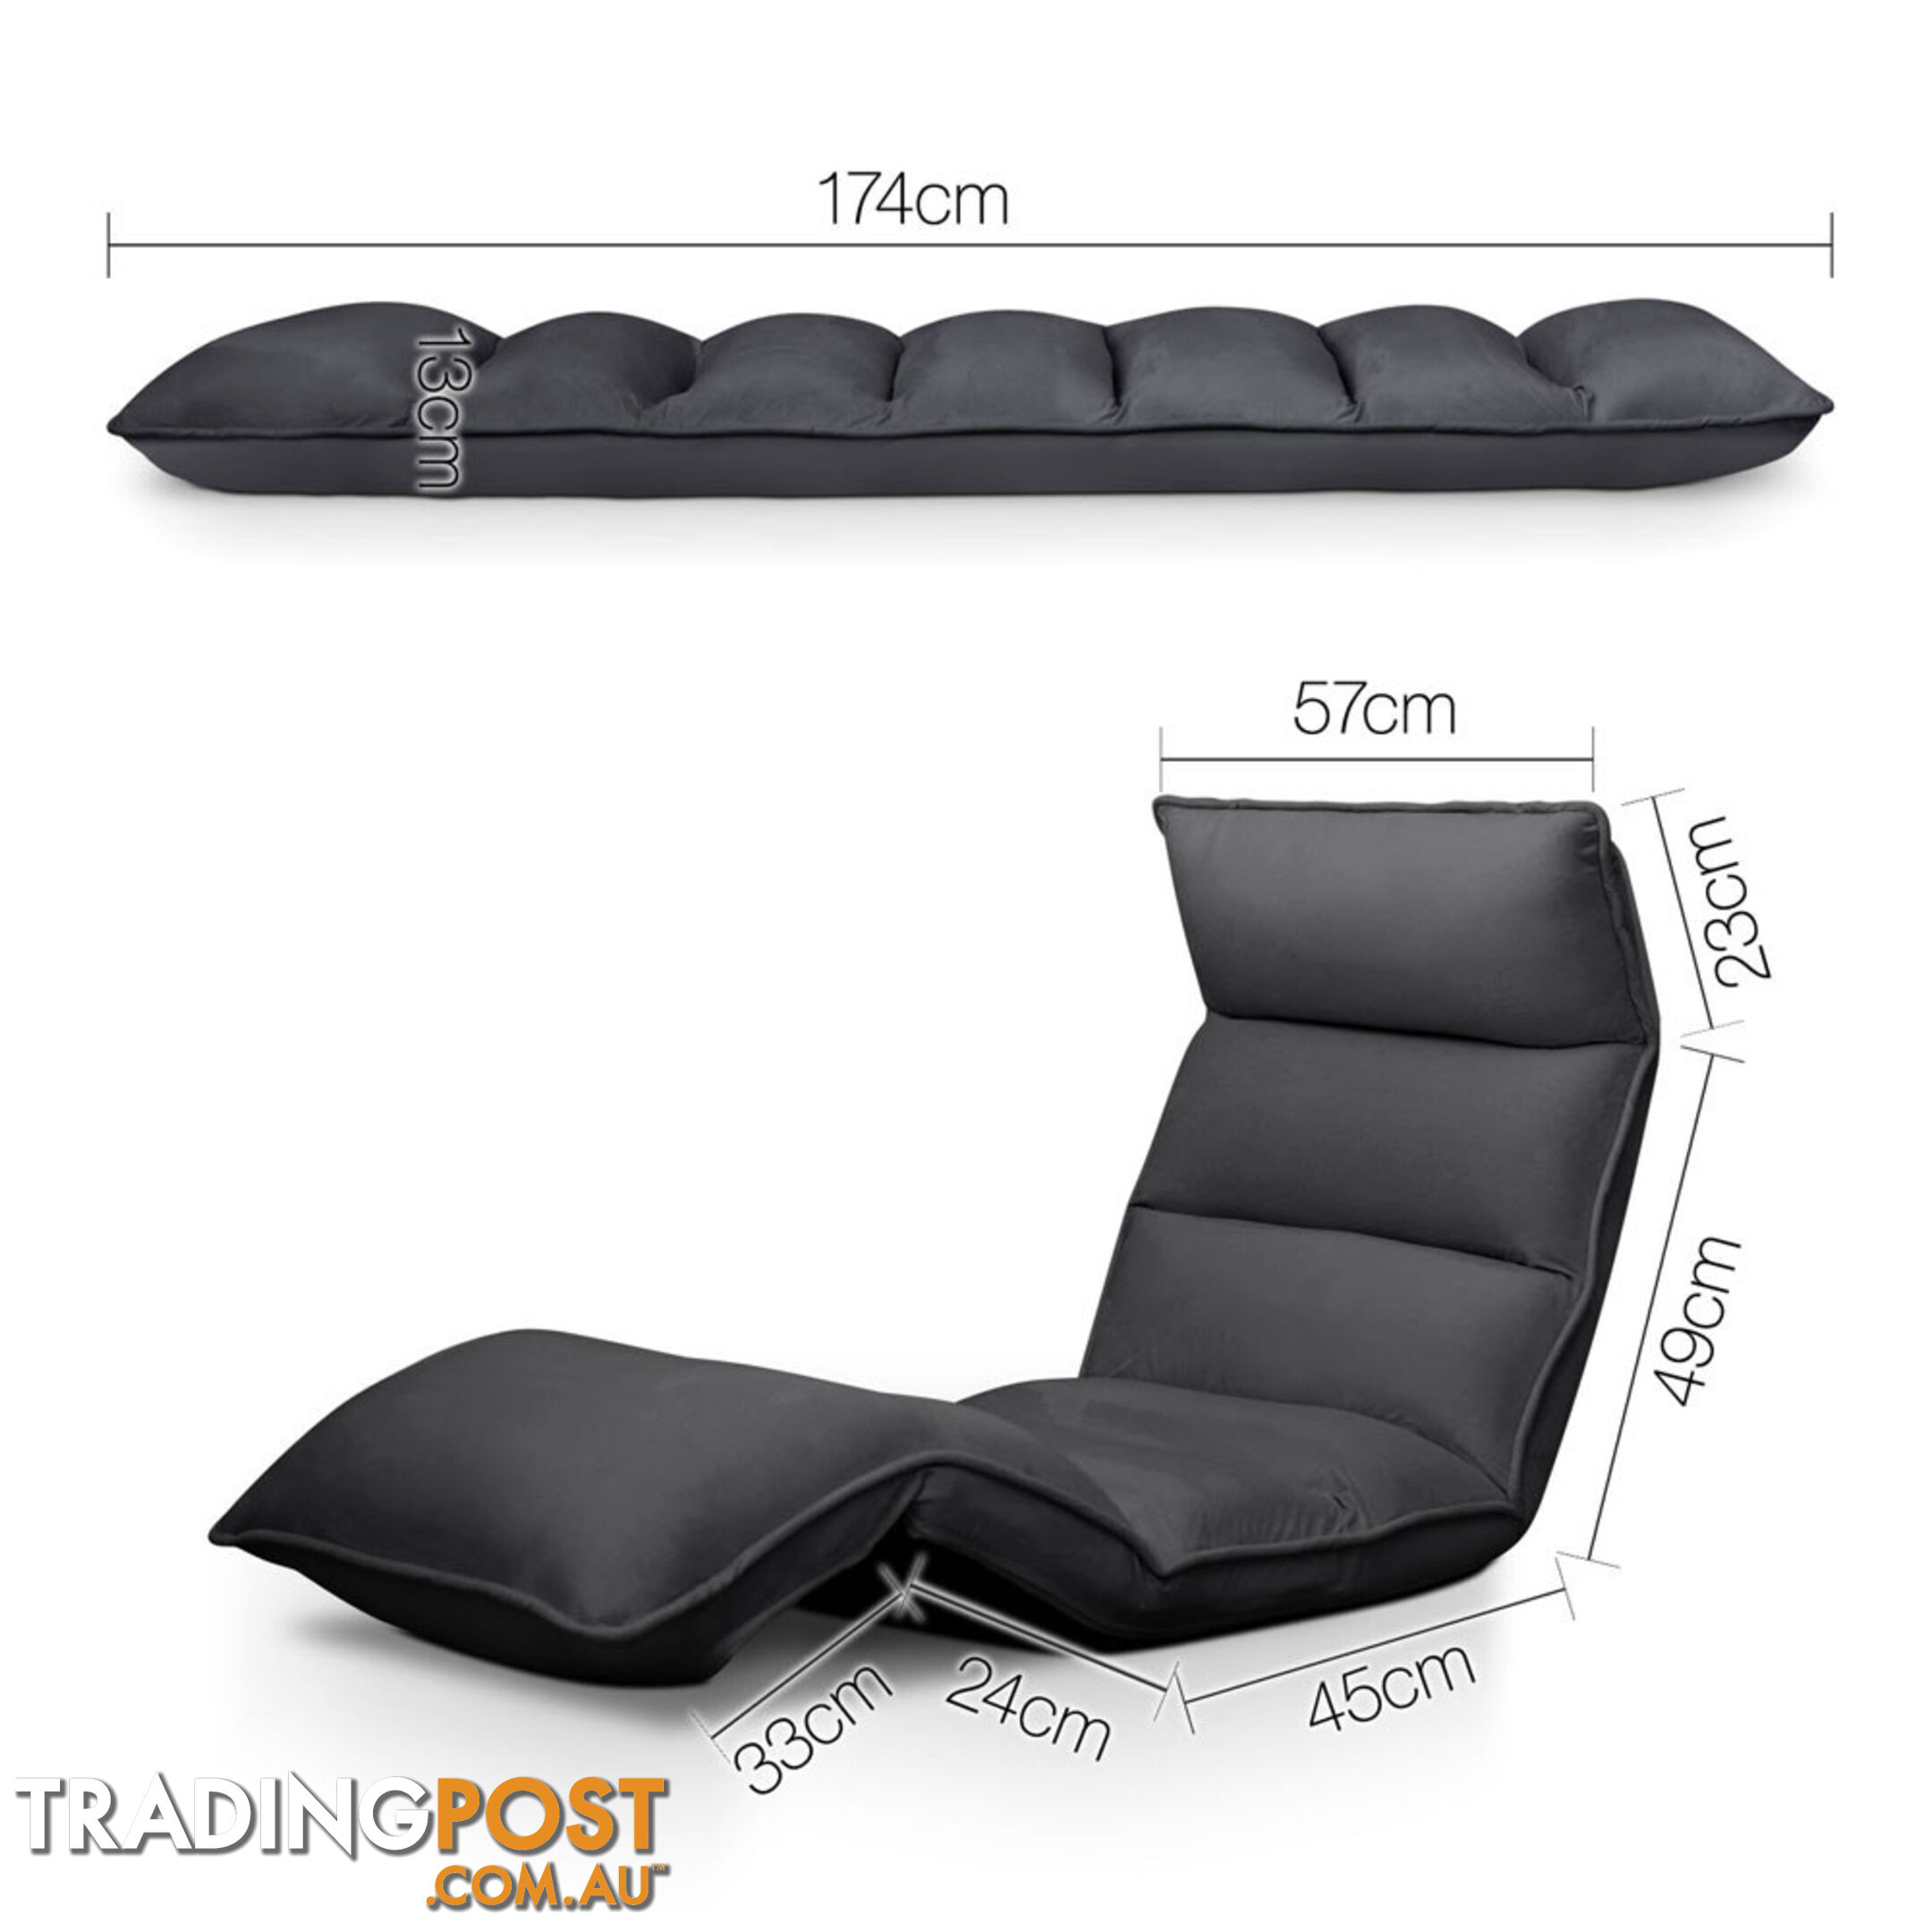 Lounge Sofa Chair - 375 Adjustable Angles  Charcoal